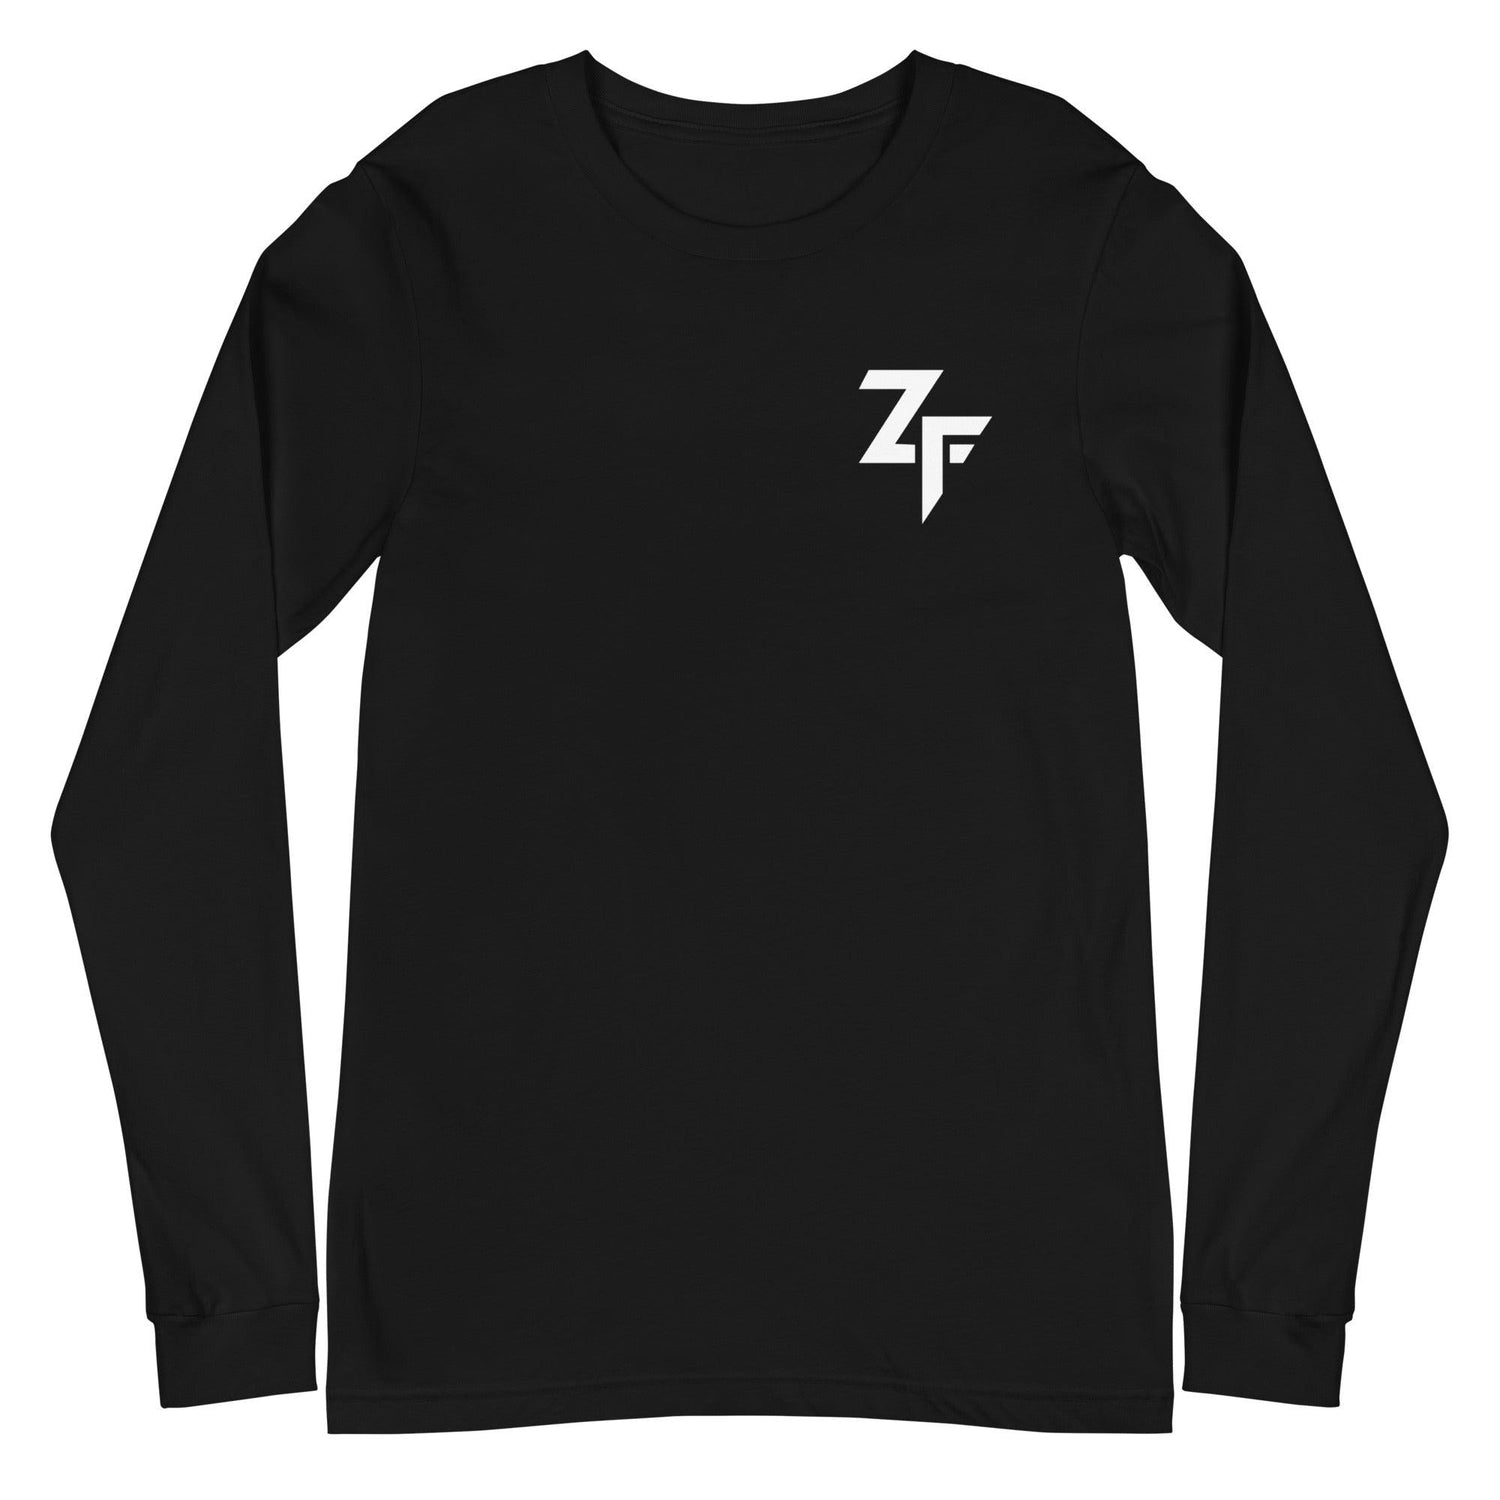 Zakhari Franklin "ZF" Long Sleeve Tee - Fan Arch